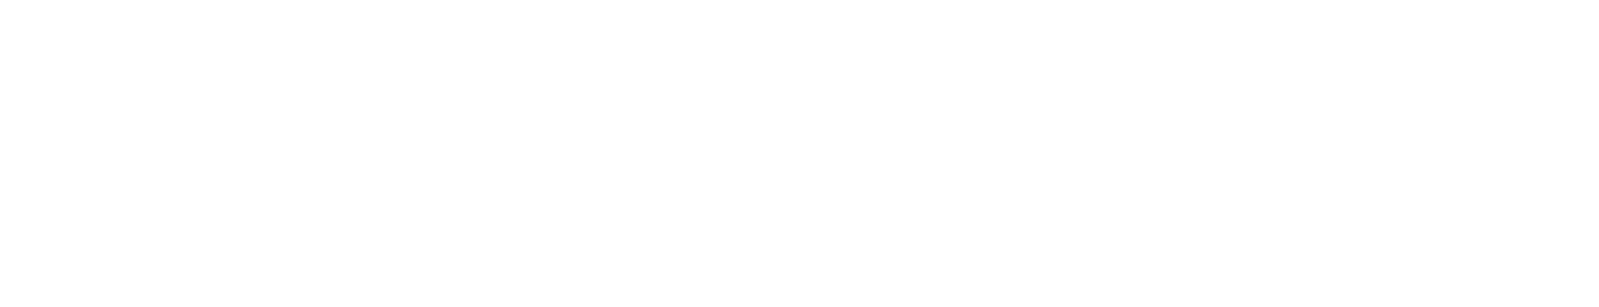 Truecaller logo large for dark backgrounds (transparent PNG)